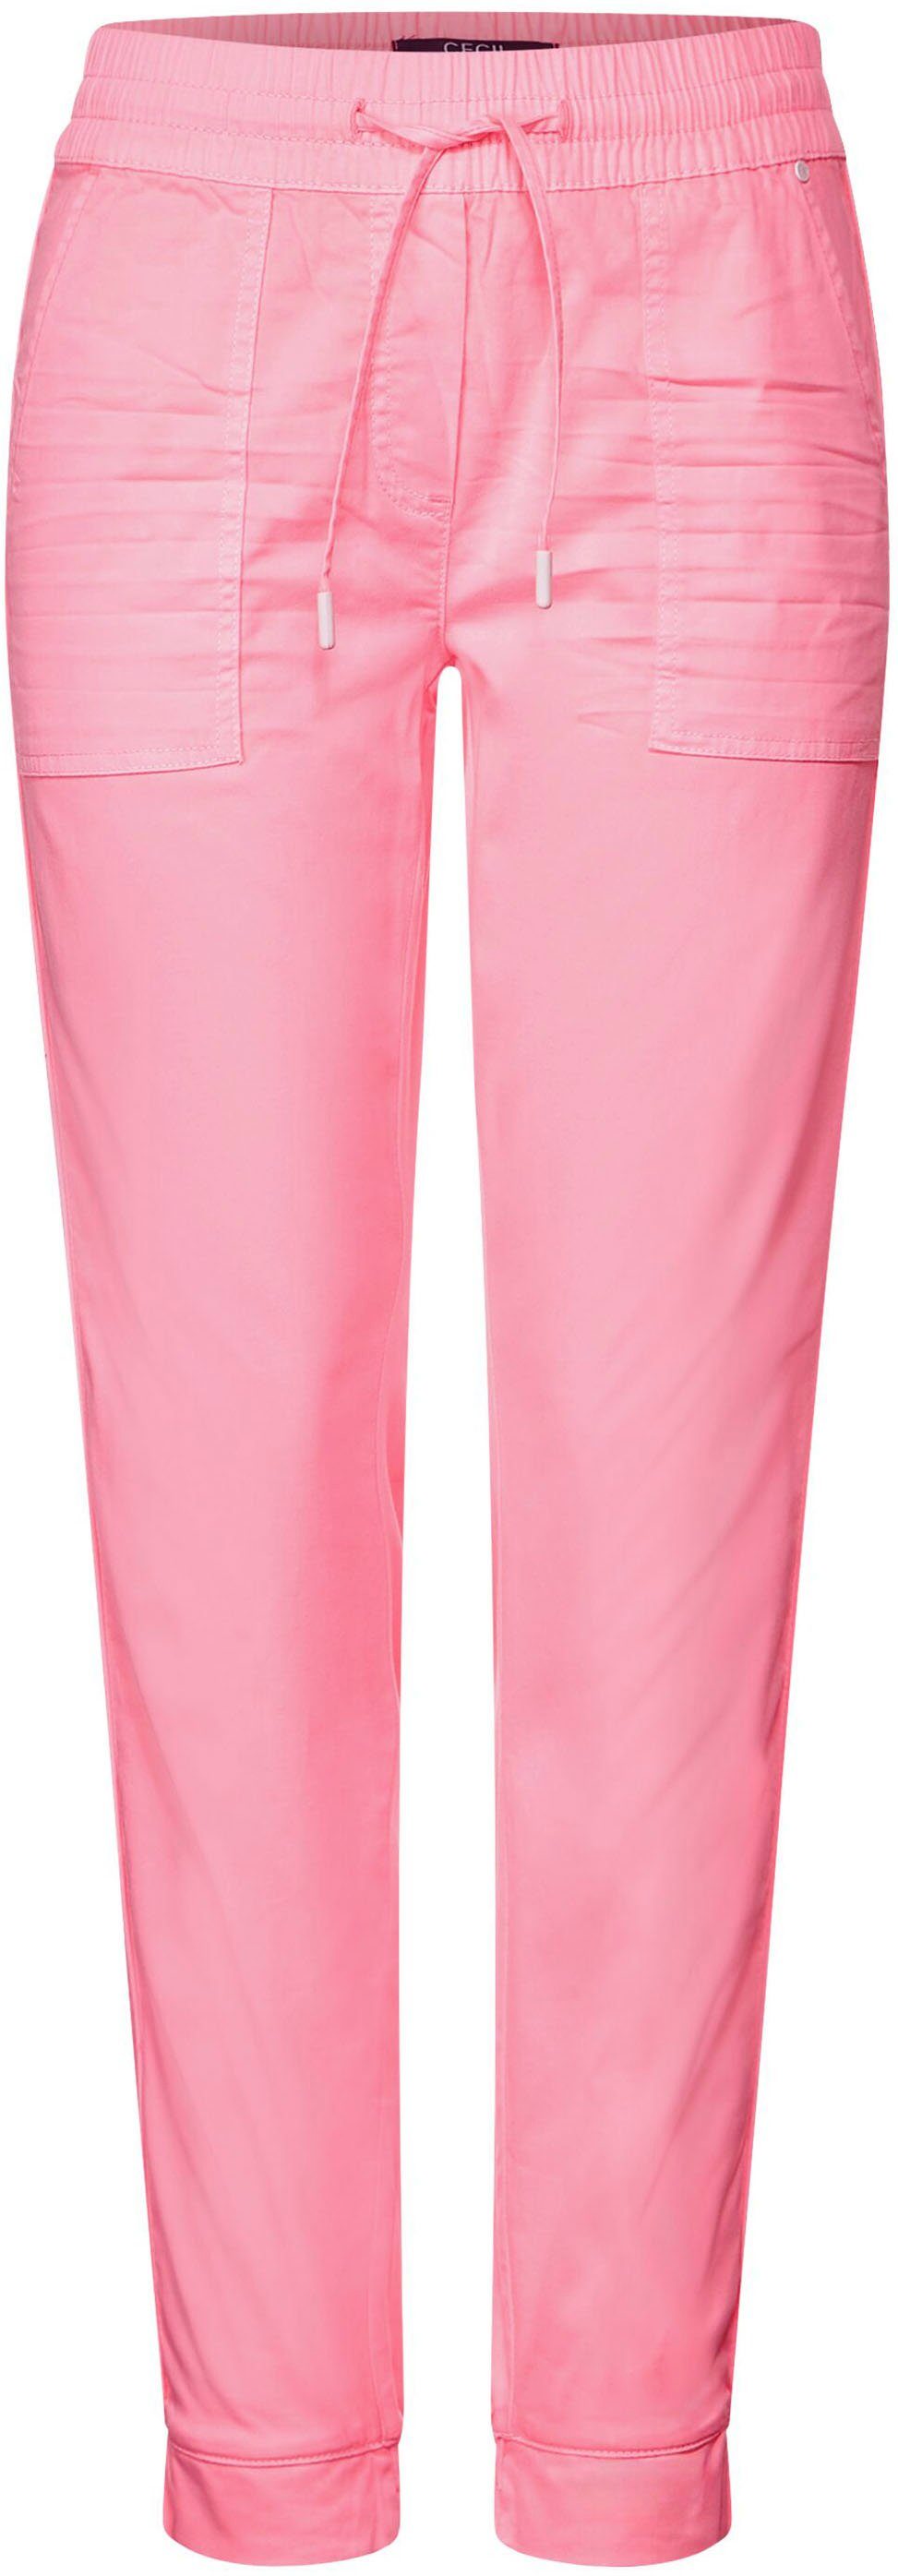 Cecil Outdoorhose mit elastischem Saum pink soft neon am Beinabschluss